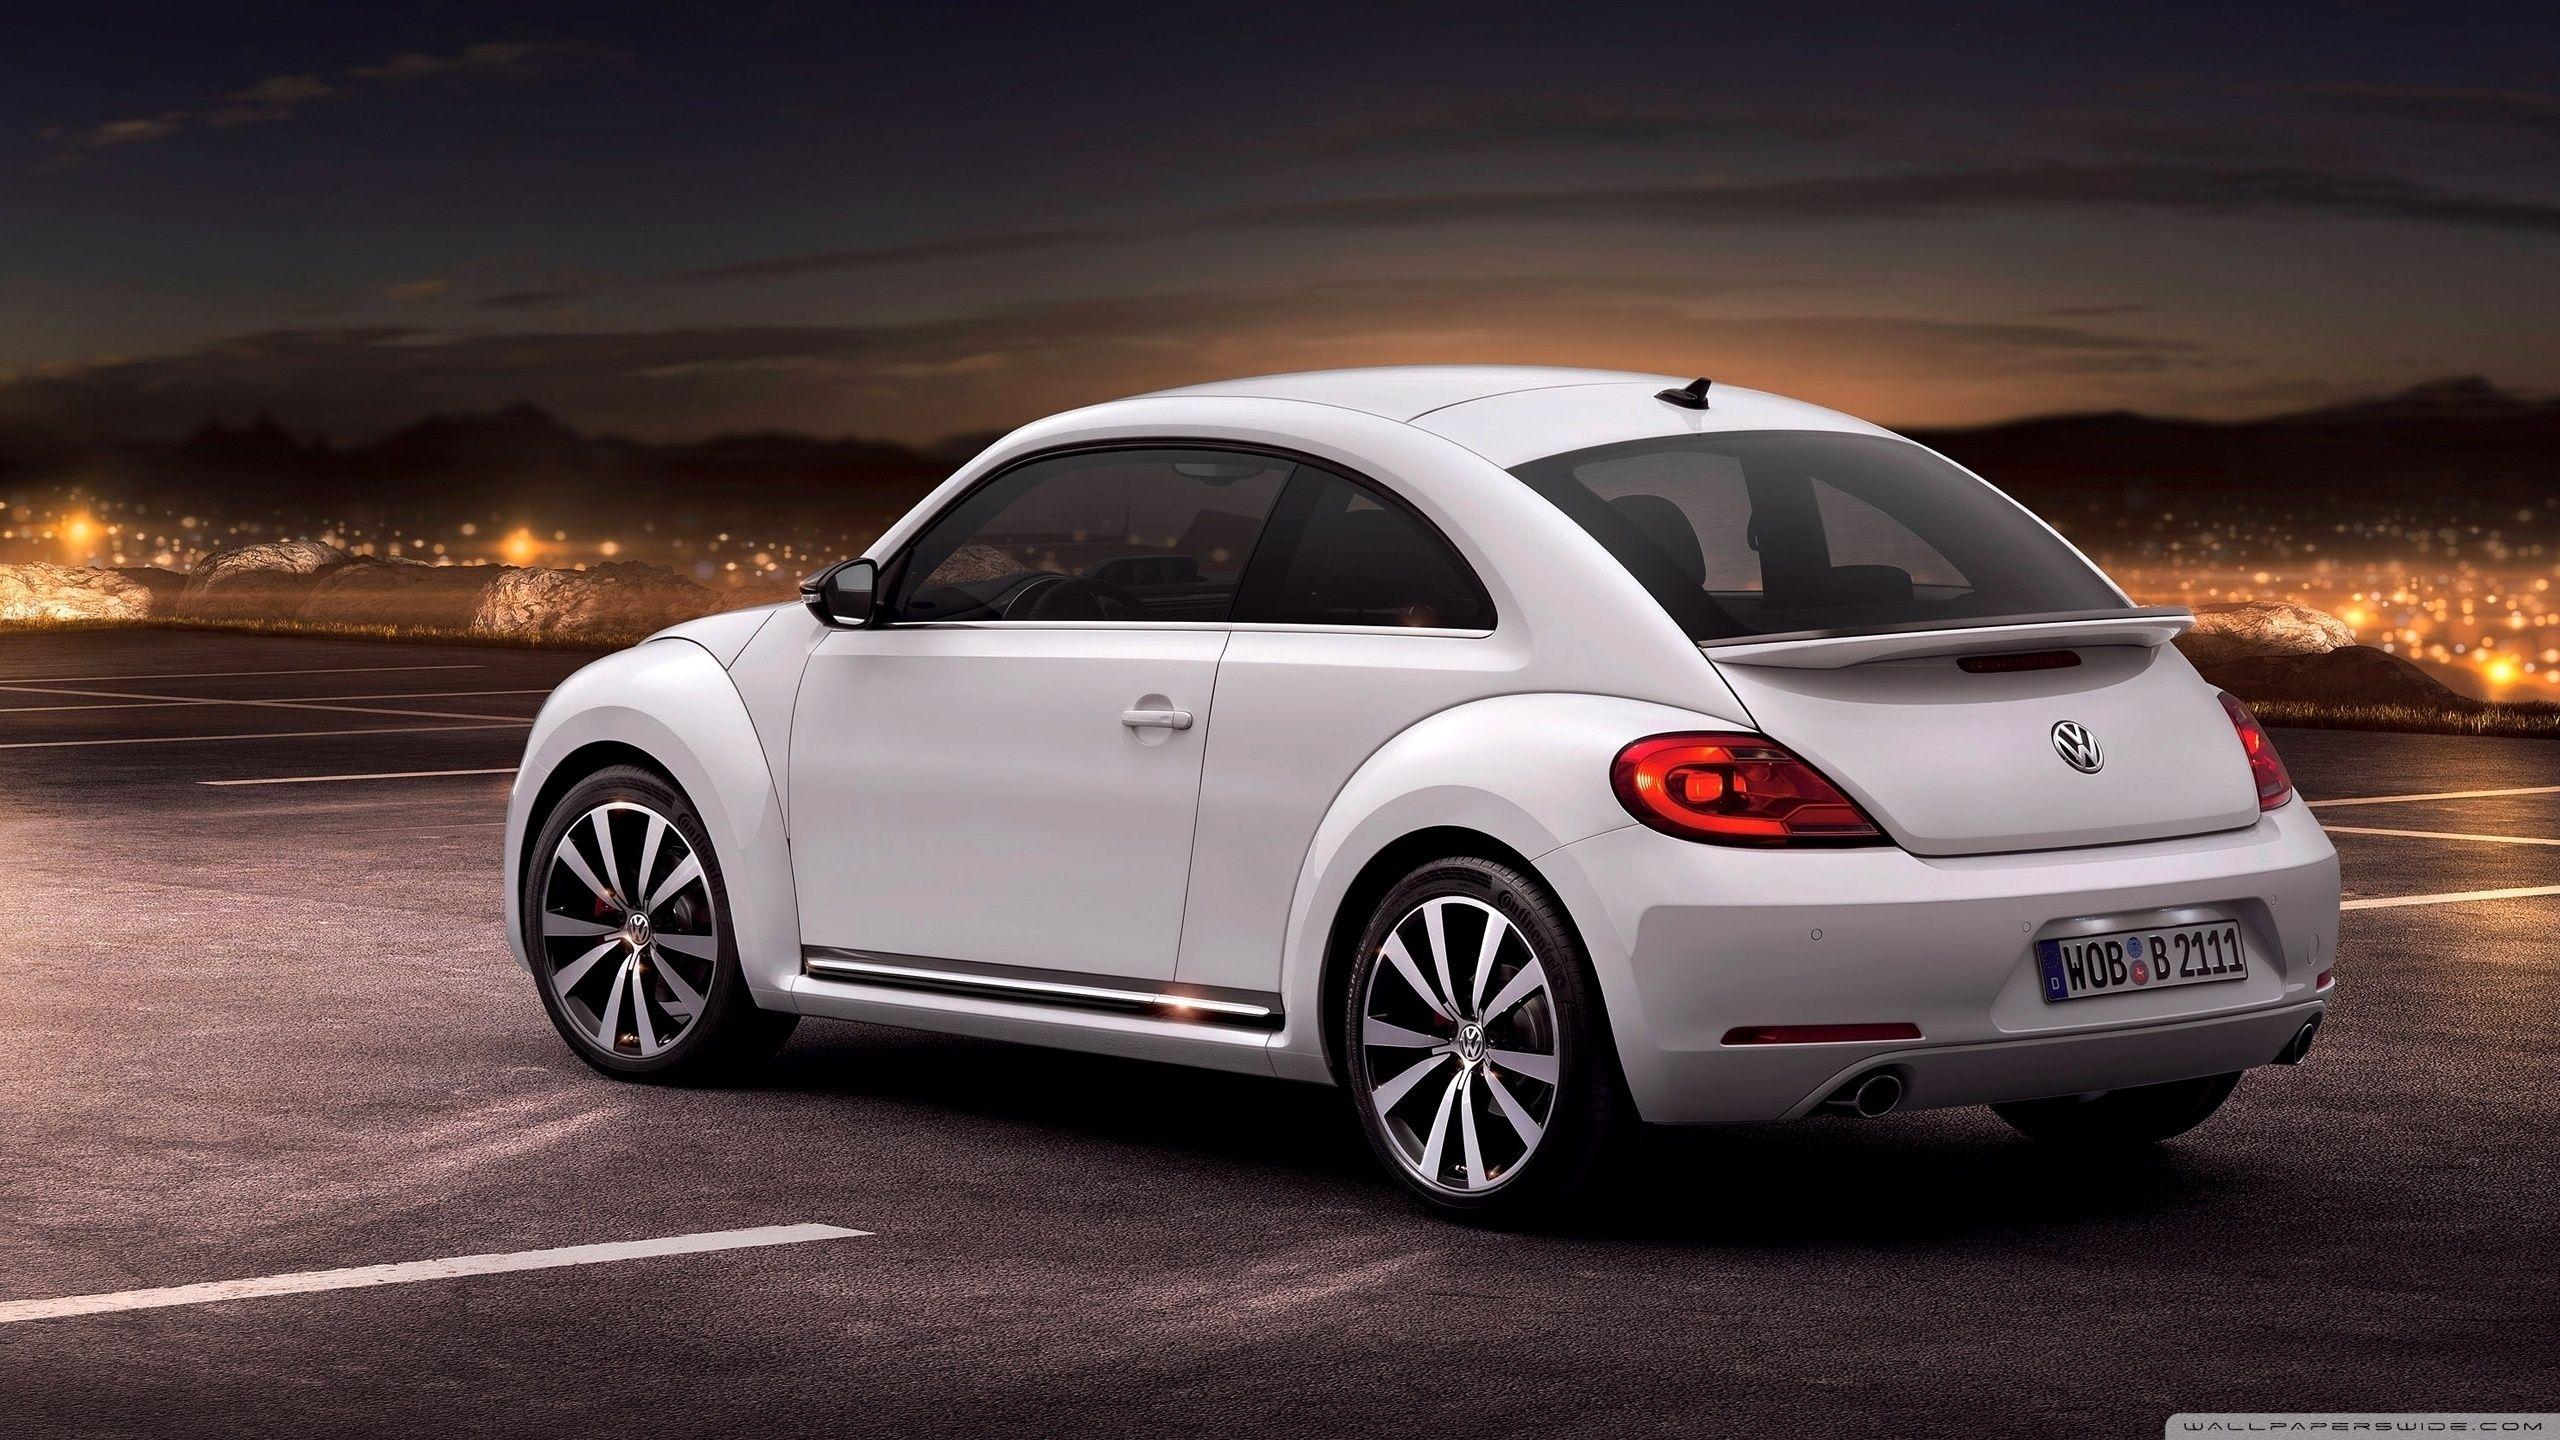 New Volkswagen Beetle HD desktop wallpaper, High Definition